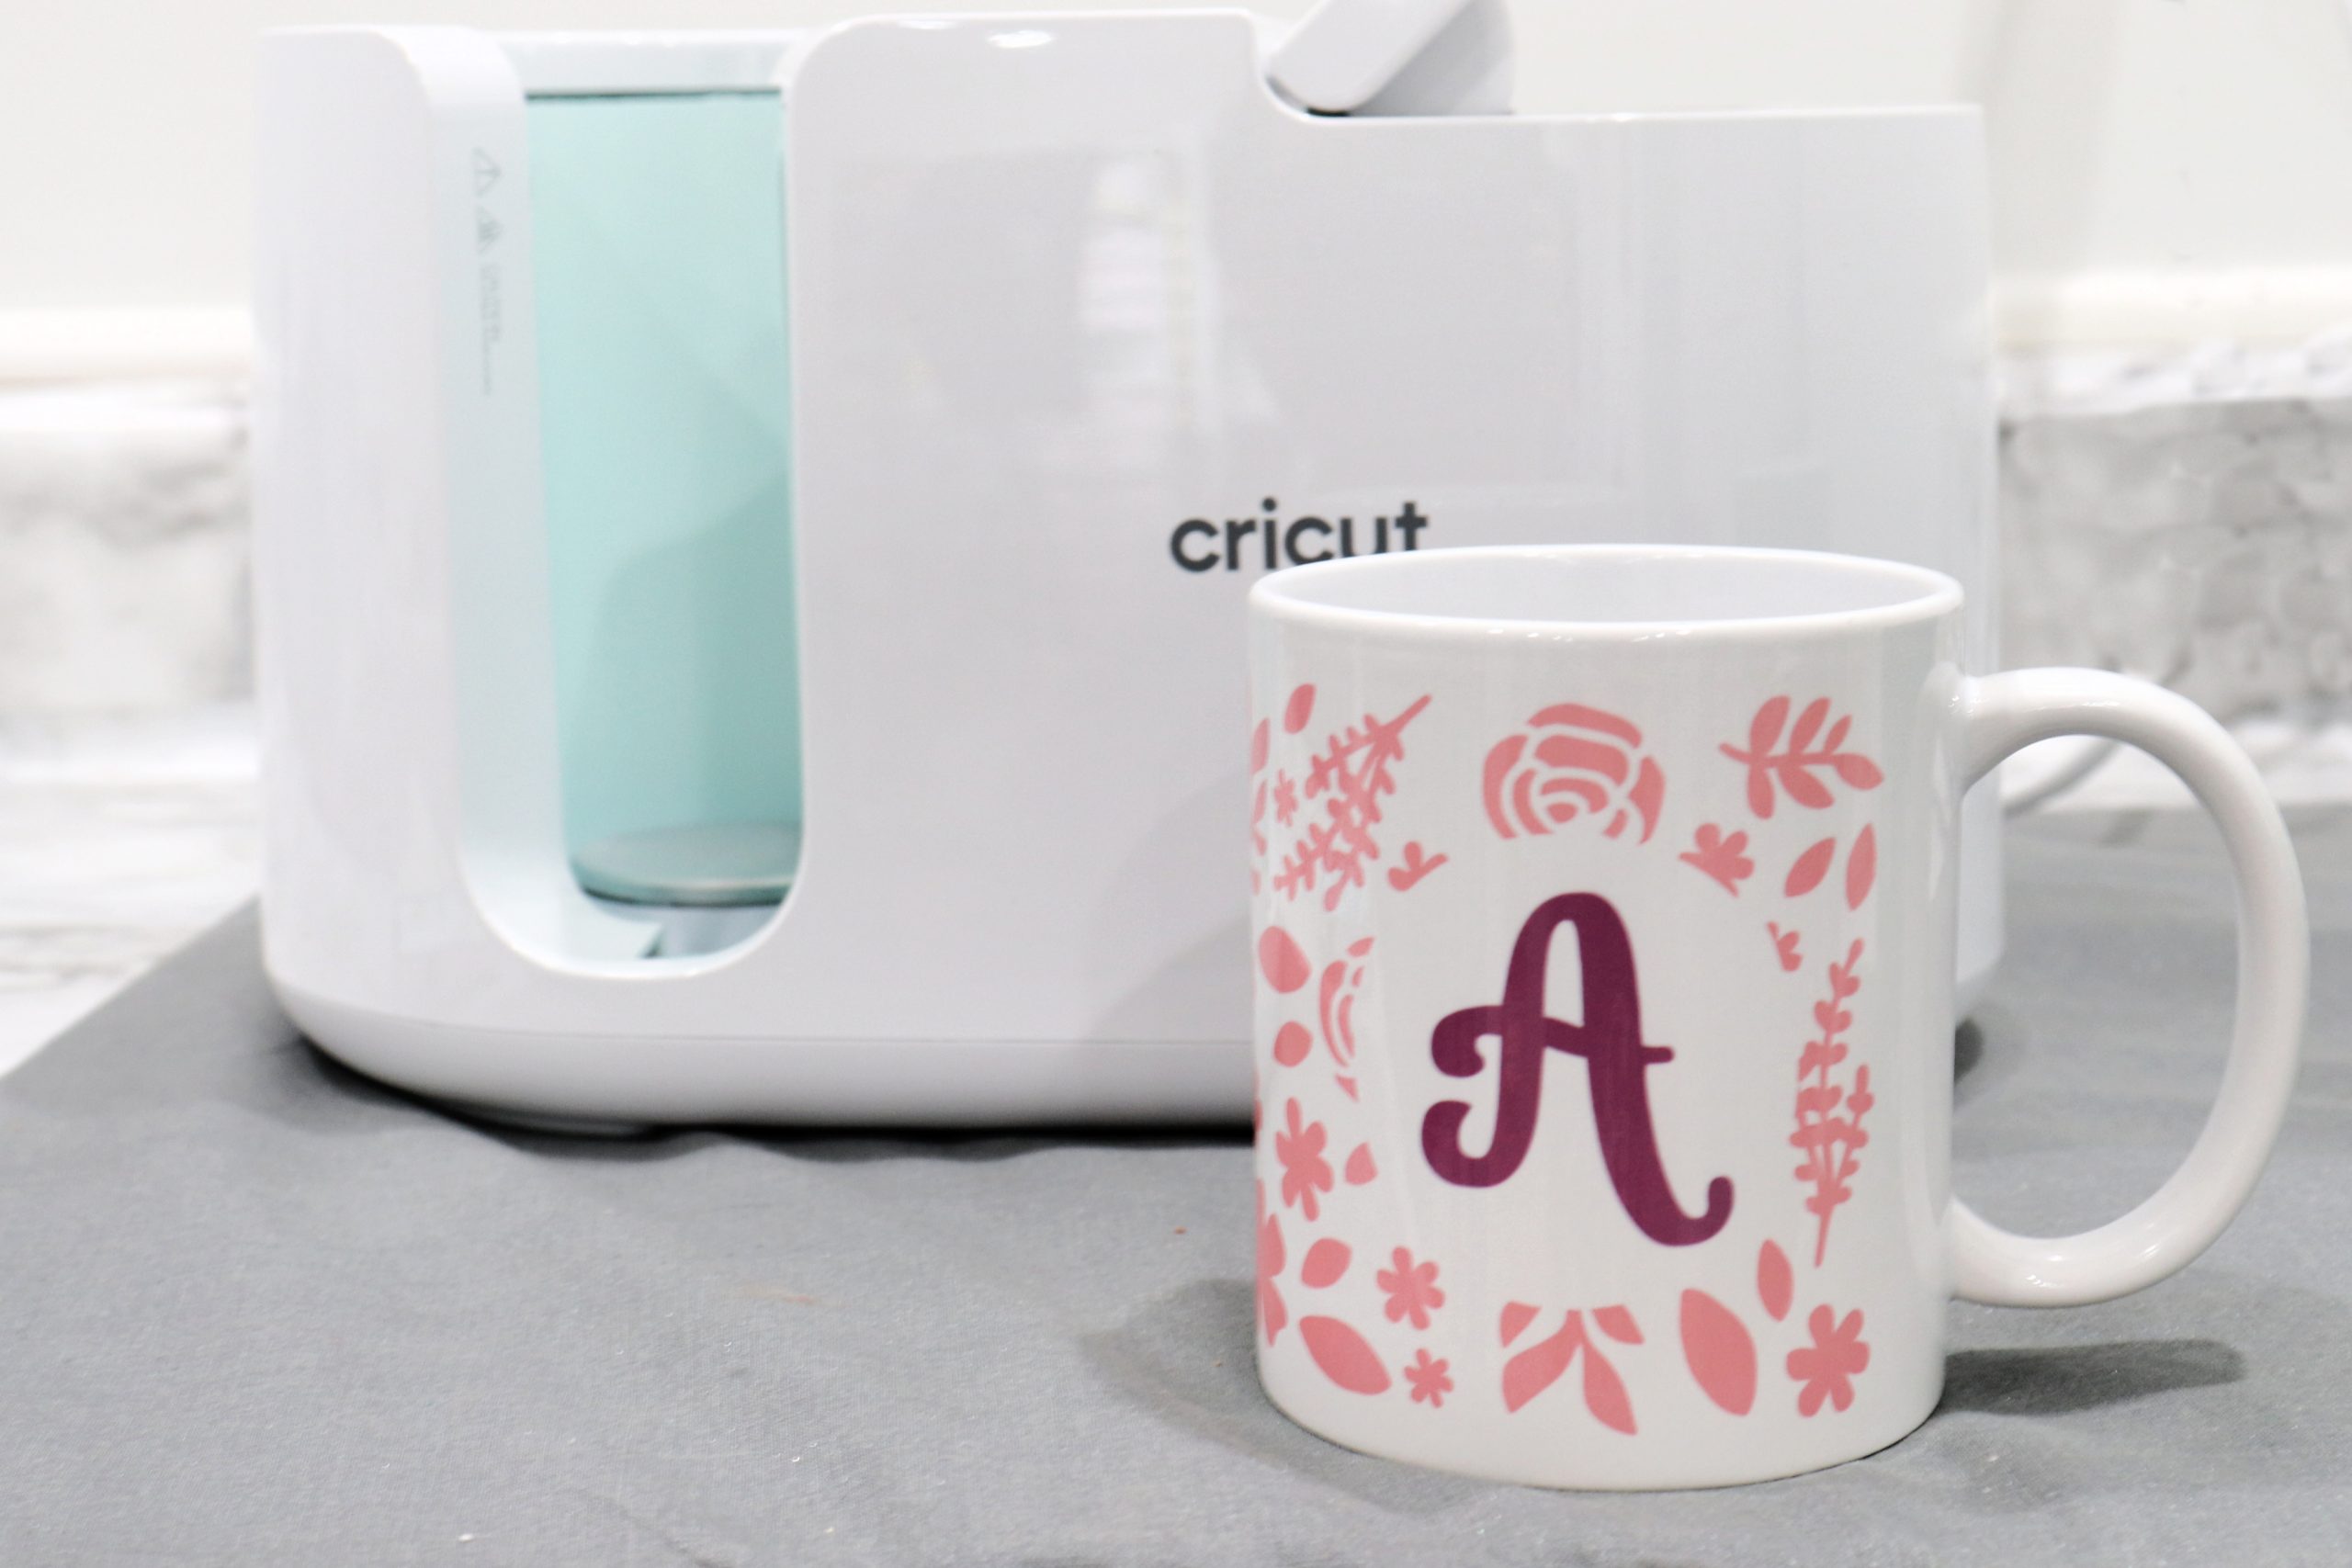 Personalized Mugs with Cricut Mug Press - Amy Latta Creations